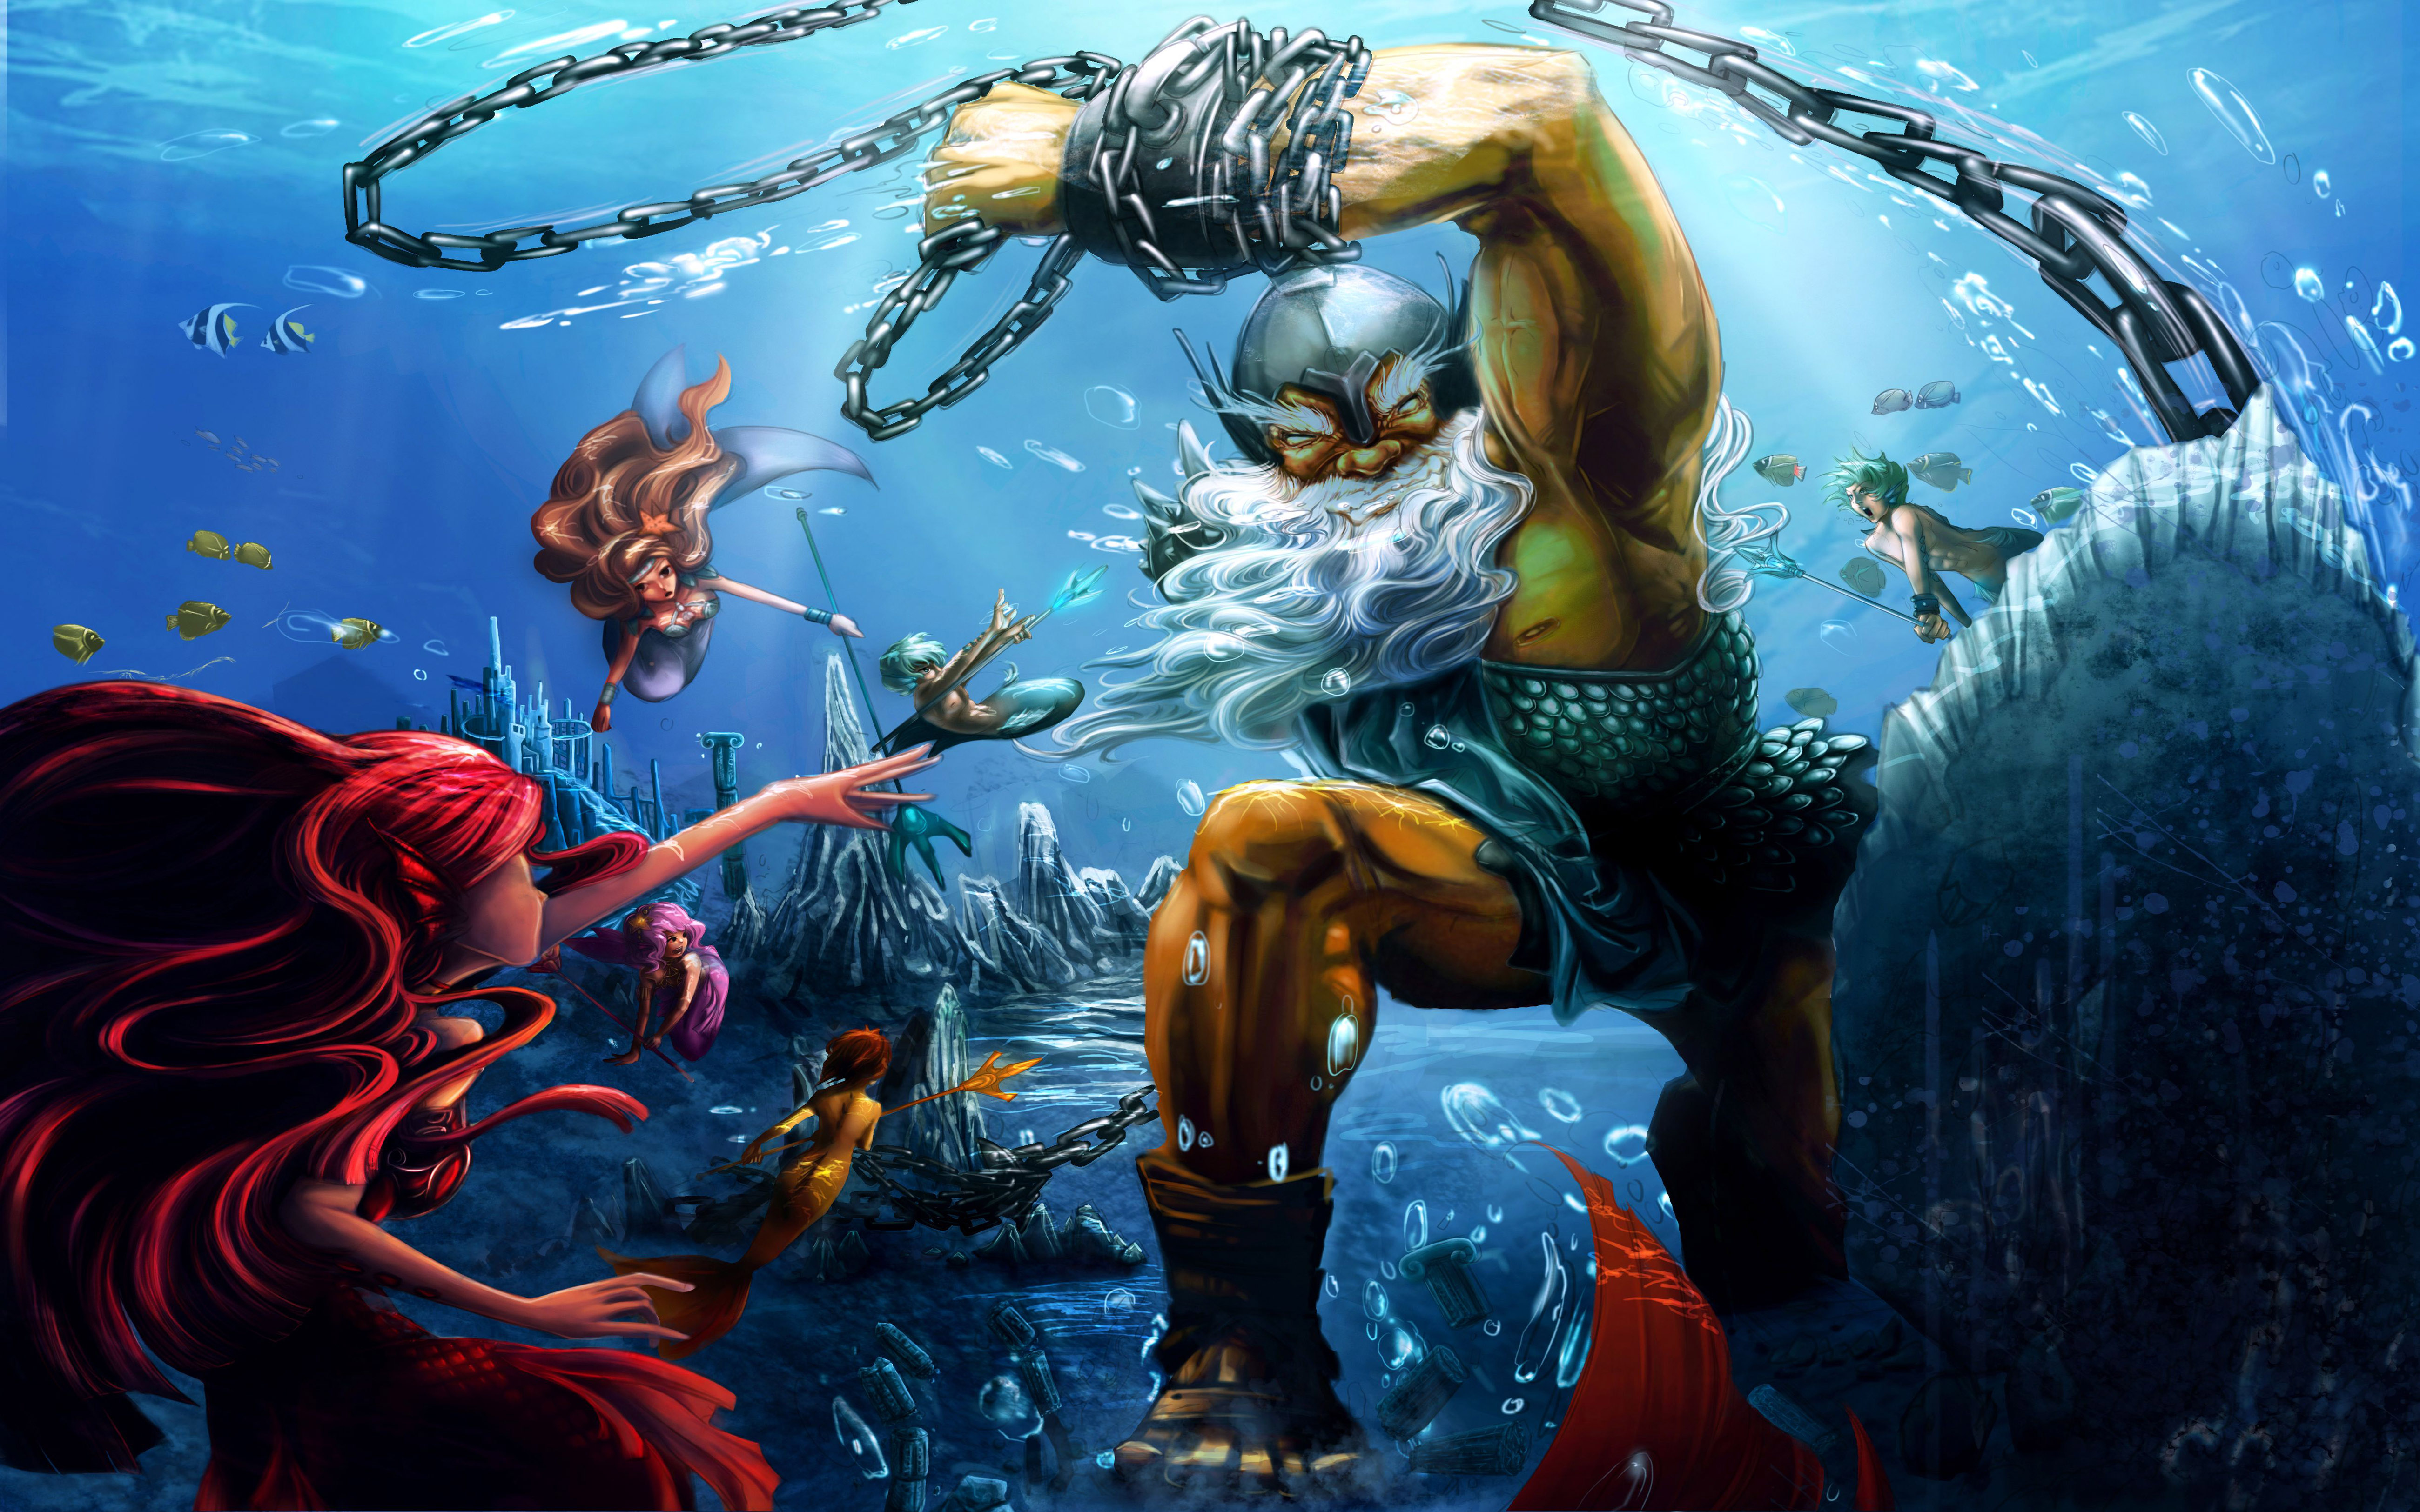 Mermaid-Underwater World Fantasy art warriors weapons chain underwater